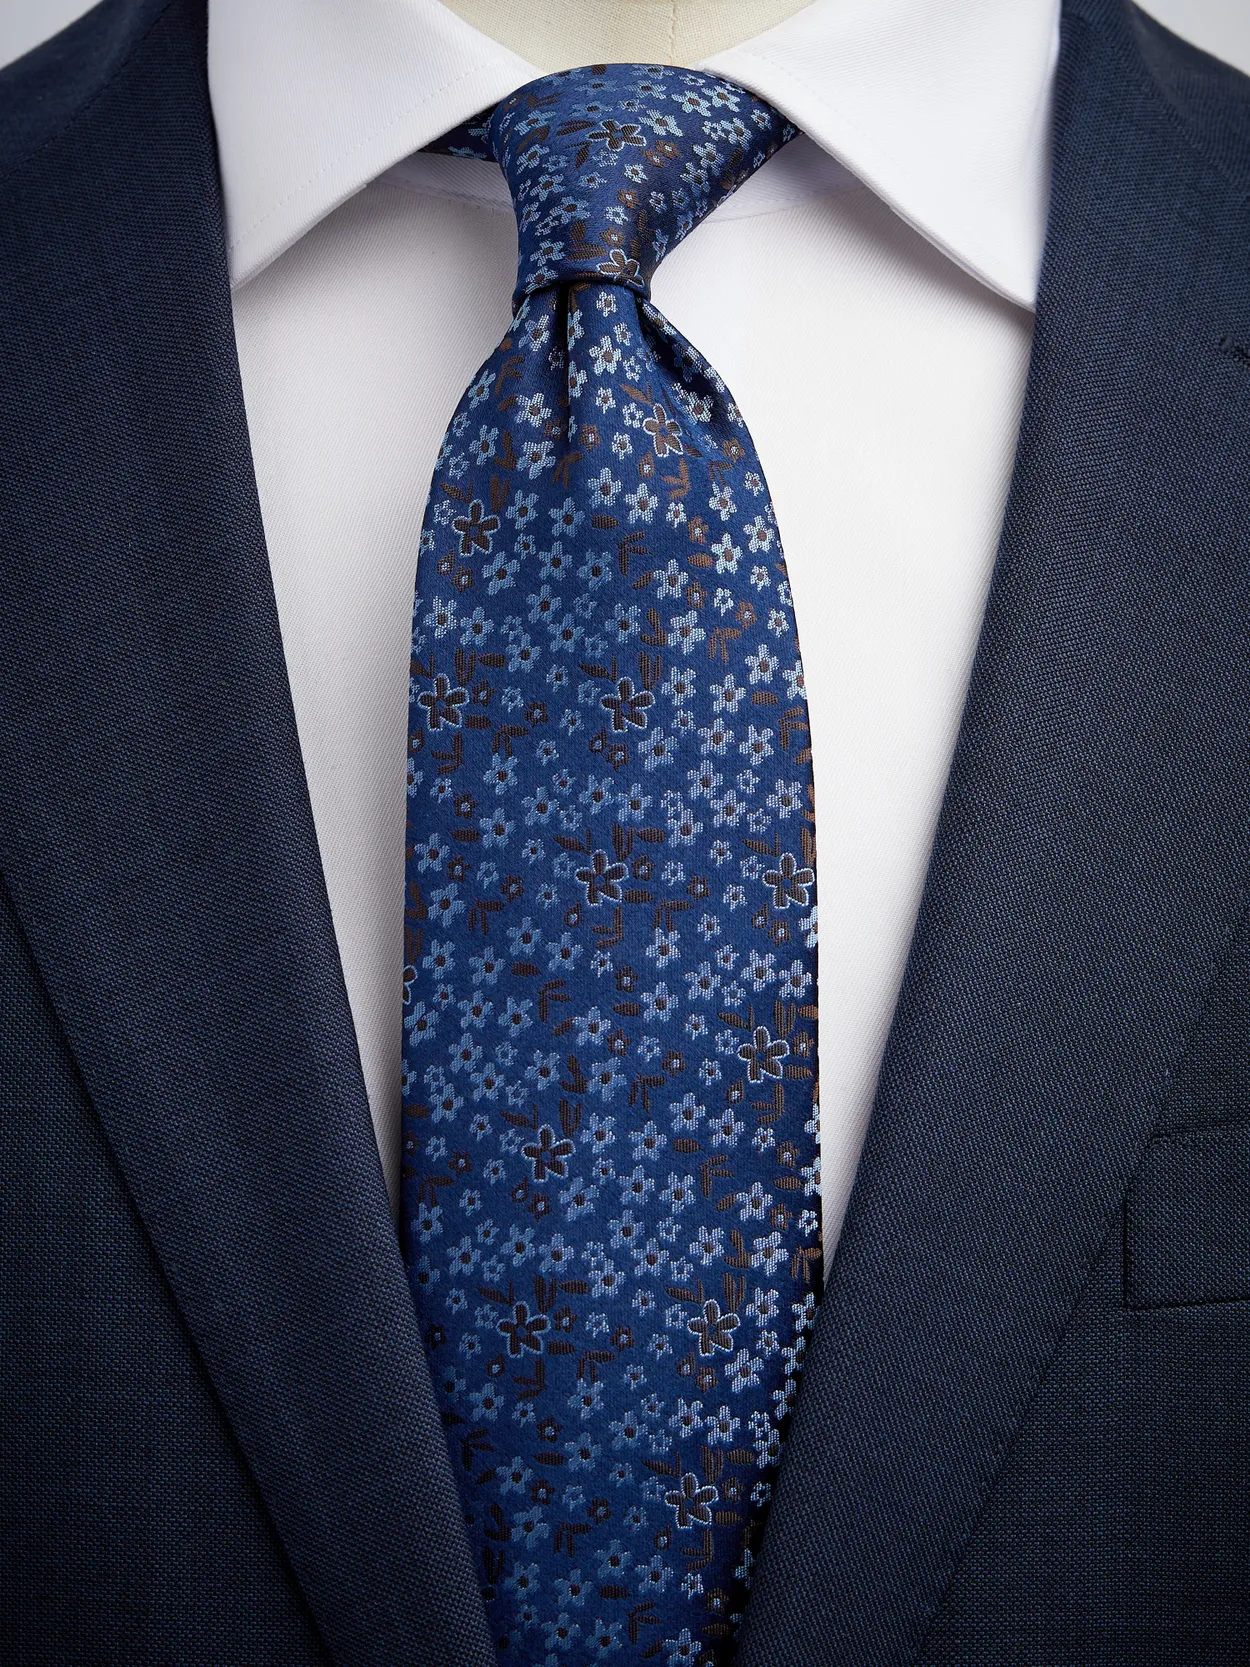 Blue & Brown Tie Floral